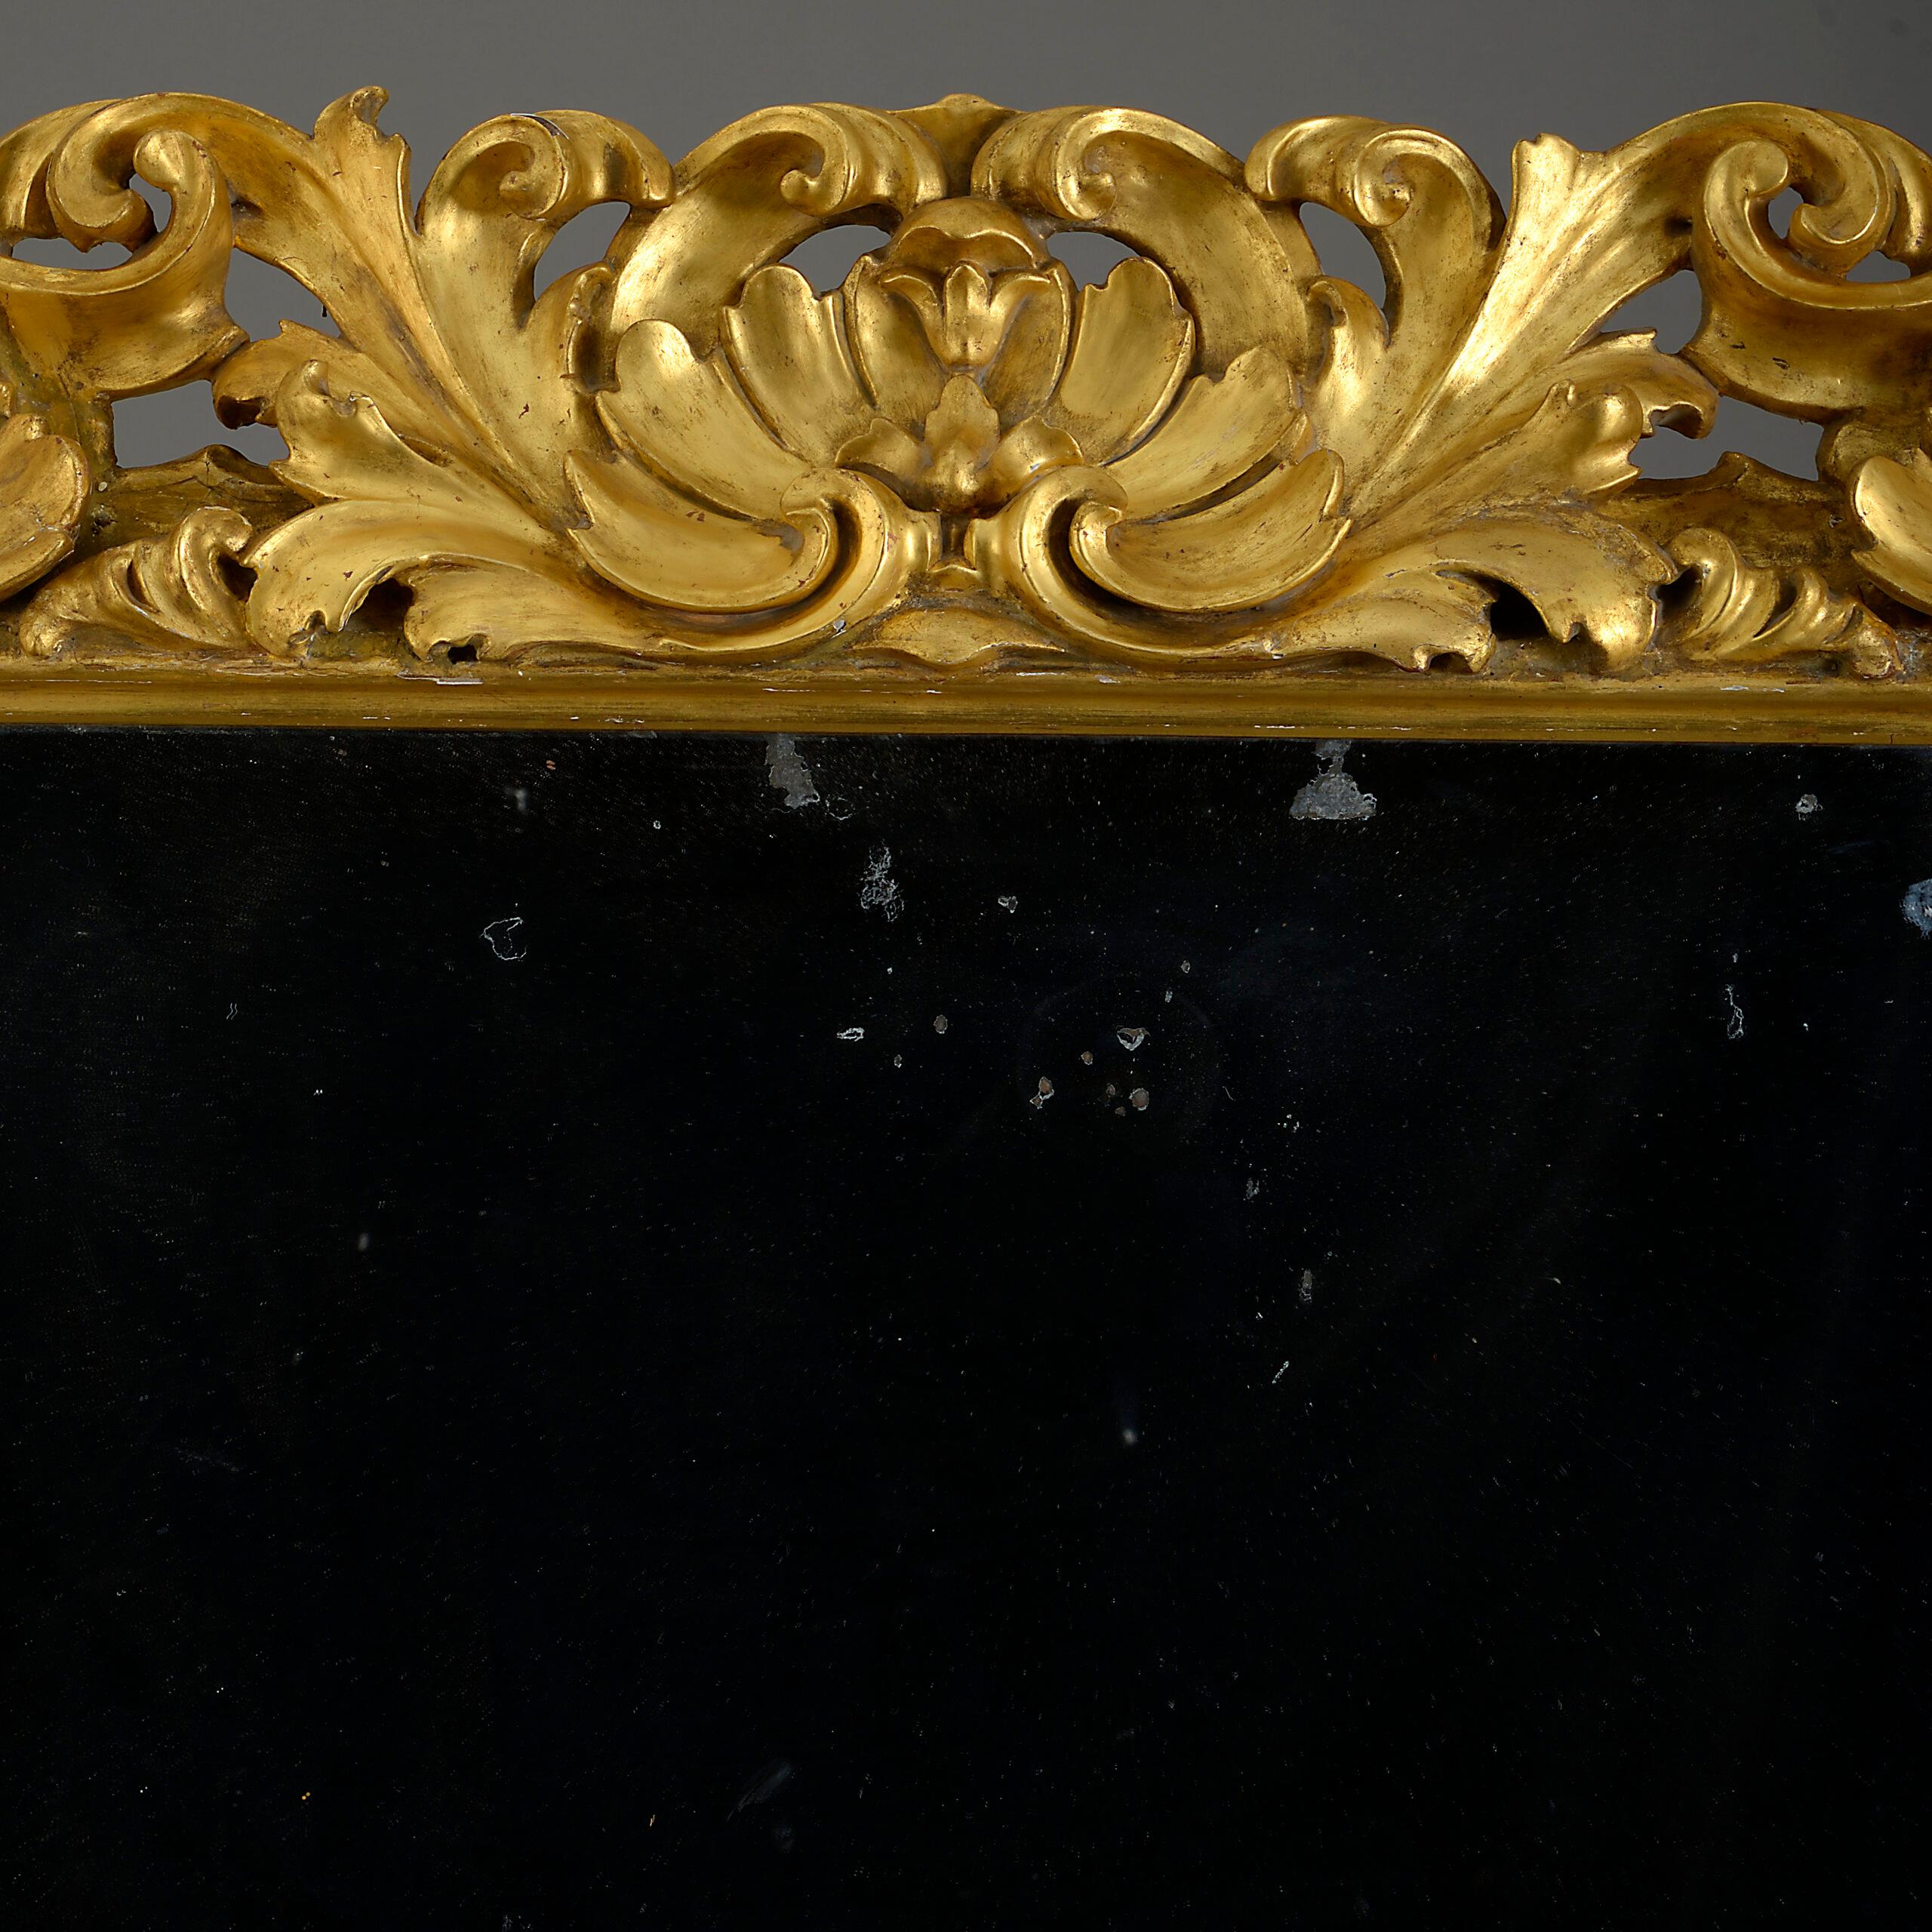 Un grand miroir baroque du début du XVIIIe siècle, le cadre en bois doré richement sculpté et décoré de feuillages, contenant une plaque de verre au mercure d'époque.

Circa 1700 Florence

Dimensions : 40.5 L x 4 P x 48.5 H pouces
103 W x 10 D x 123